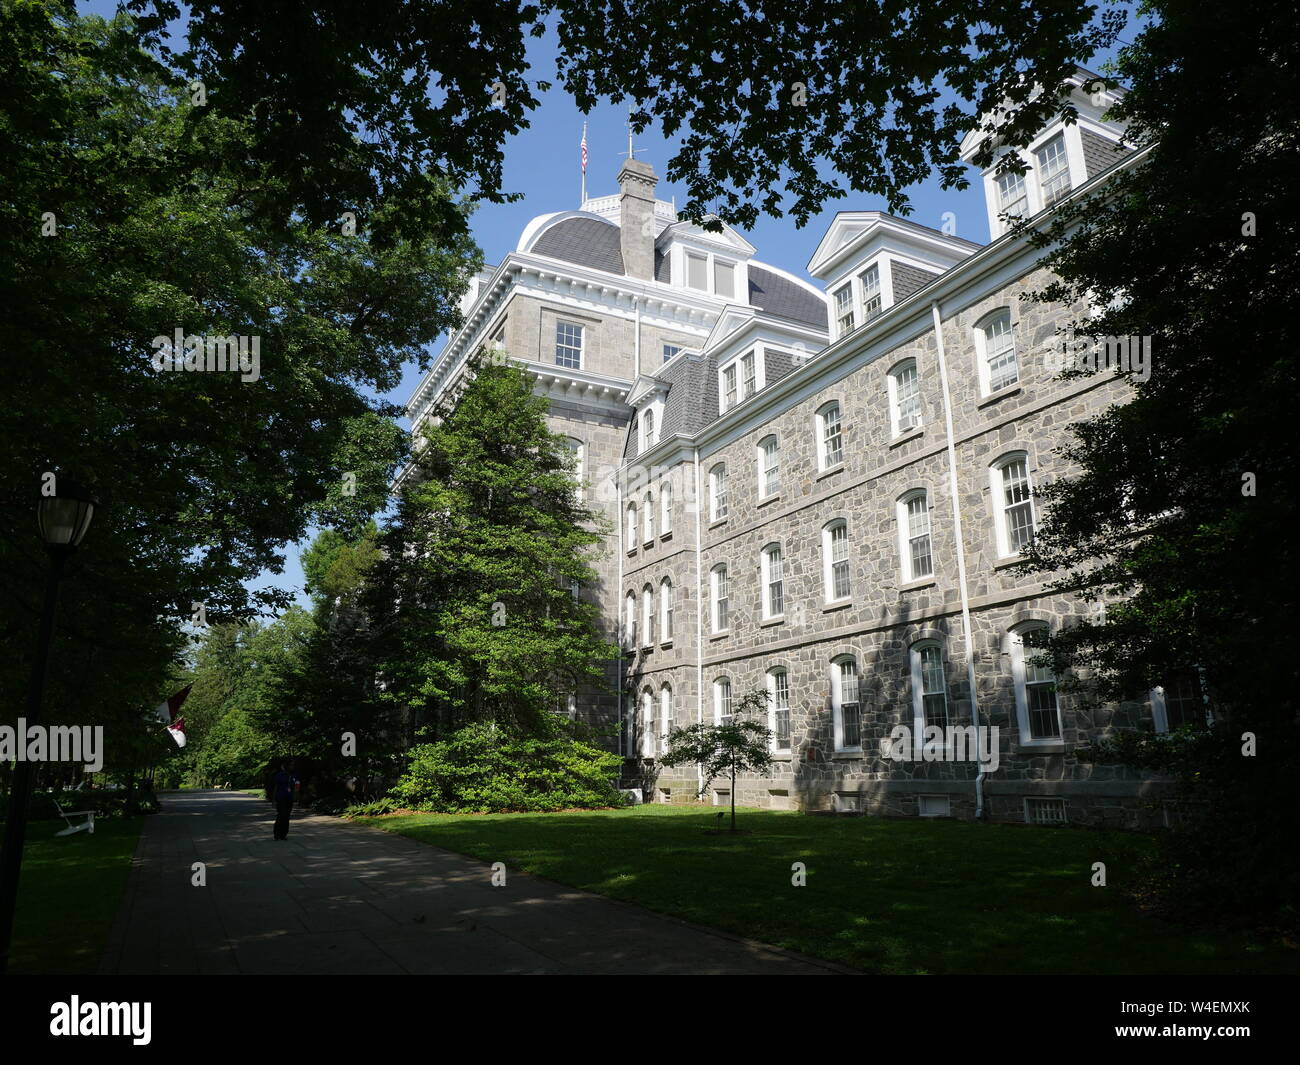 Swarthmore College es uno de los mejores pequeños colegios en los Estados Unidos, con un bello paisaje del campus. Foto de stock